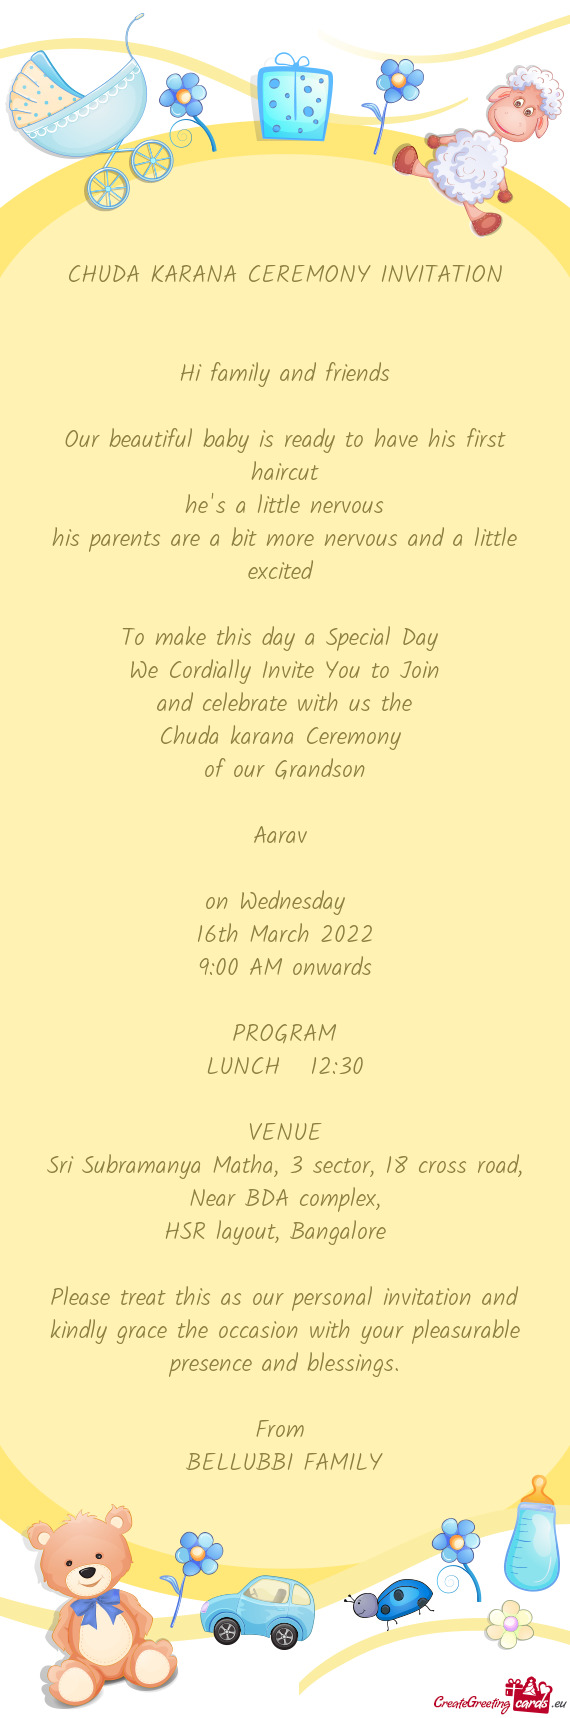 CHUDA KARANA CEREMONY INVITATION